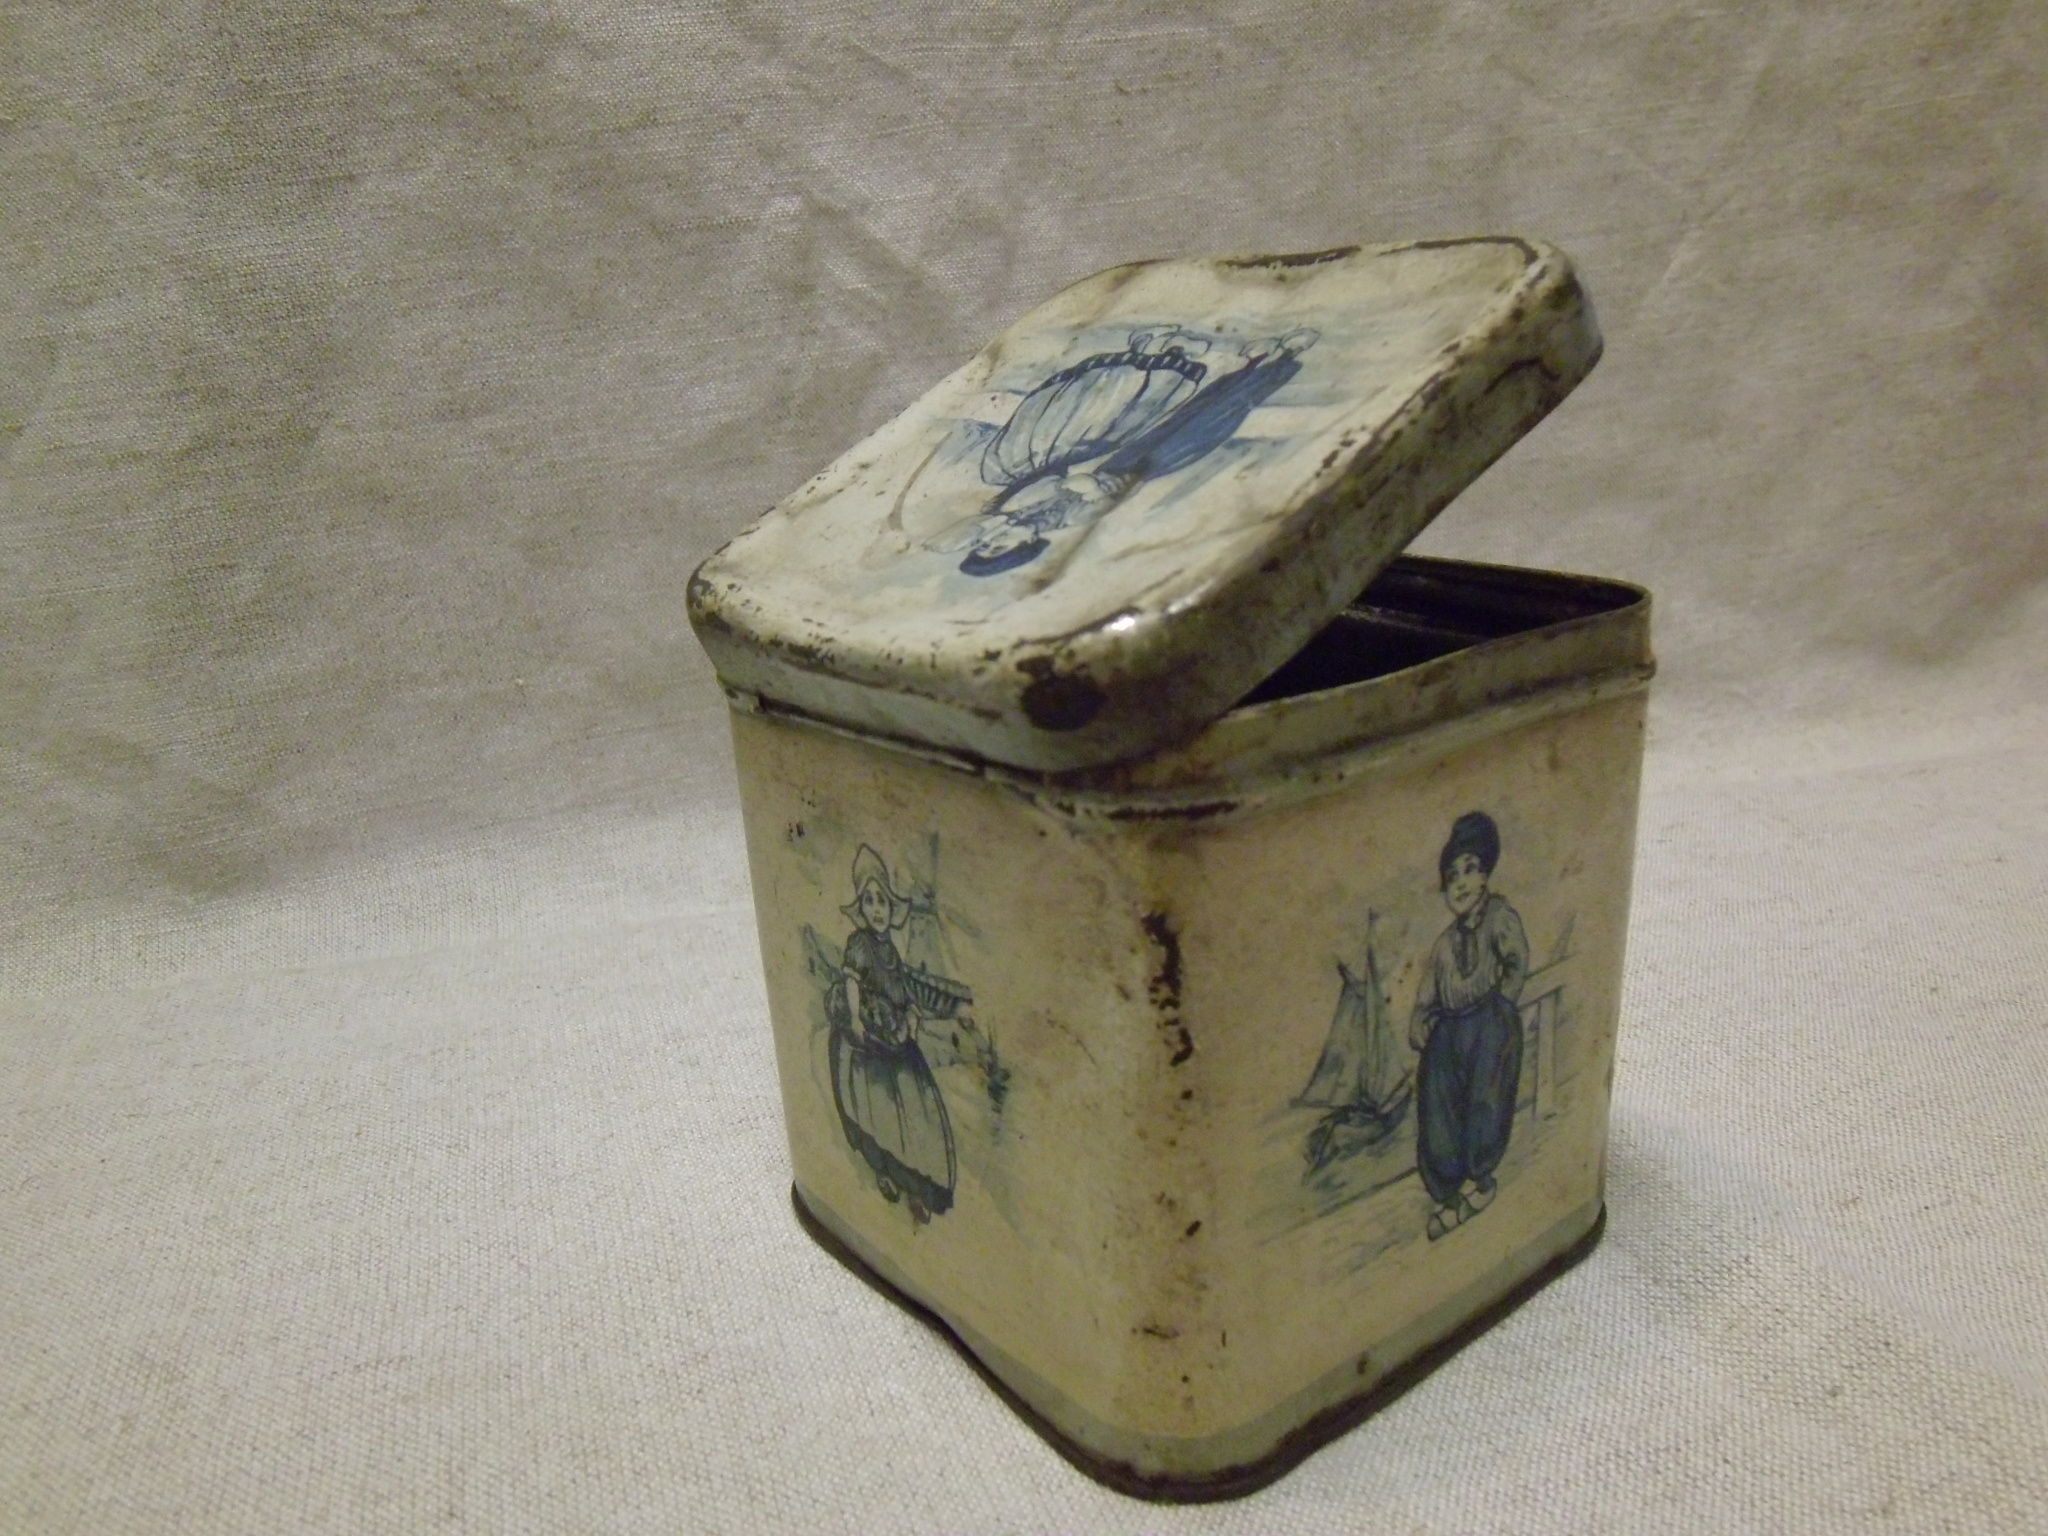 Élelmiszeres doboz, fém, kocka alakú, fehér alapon, kék holland figurák (Tomory Lajos Pedagógiai és Helytörténeti Gyűjtemény CC BY-NC-SA)